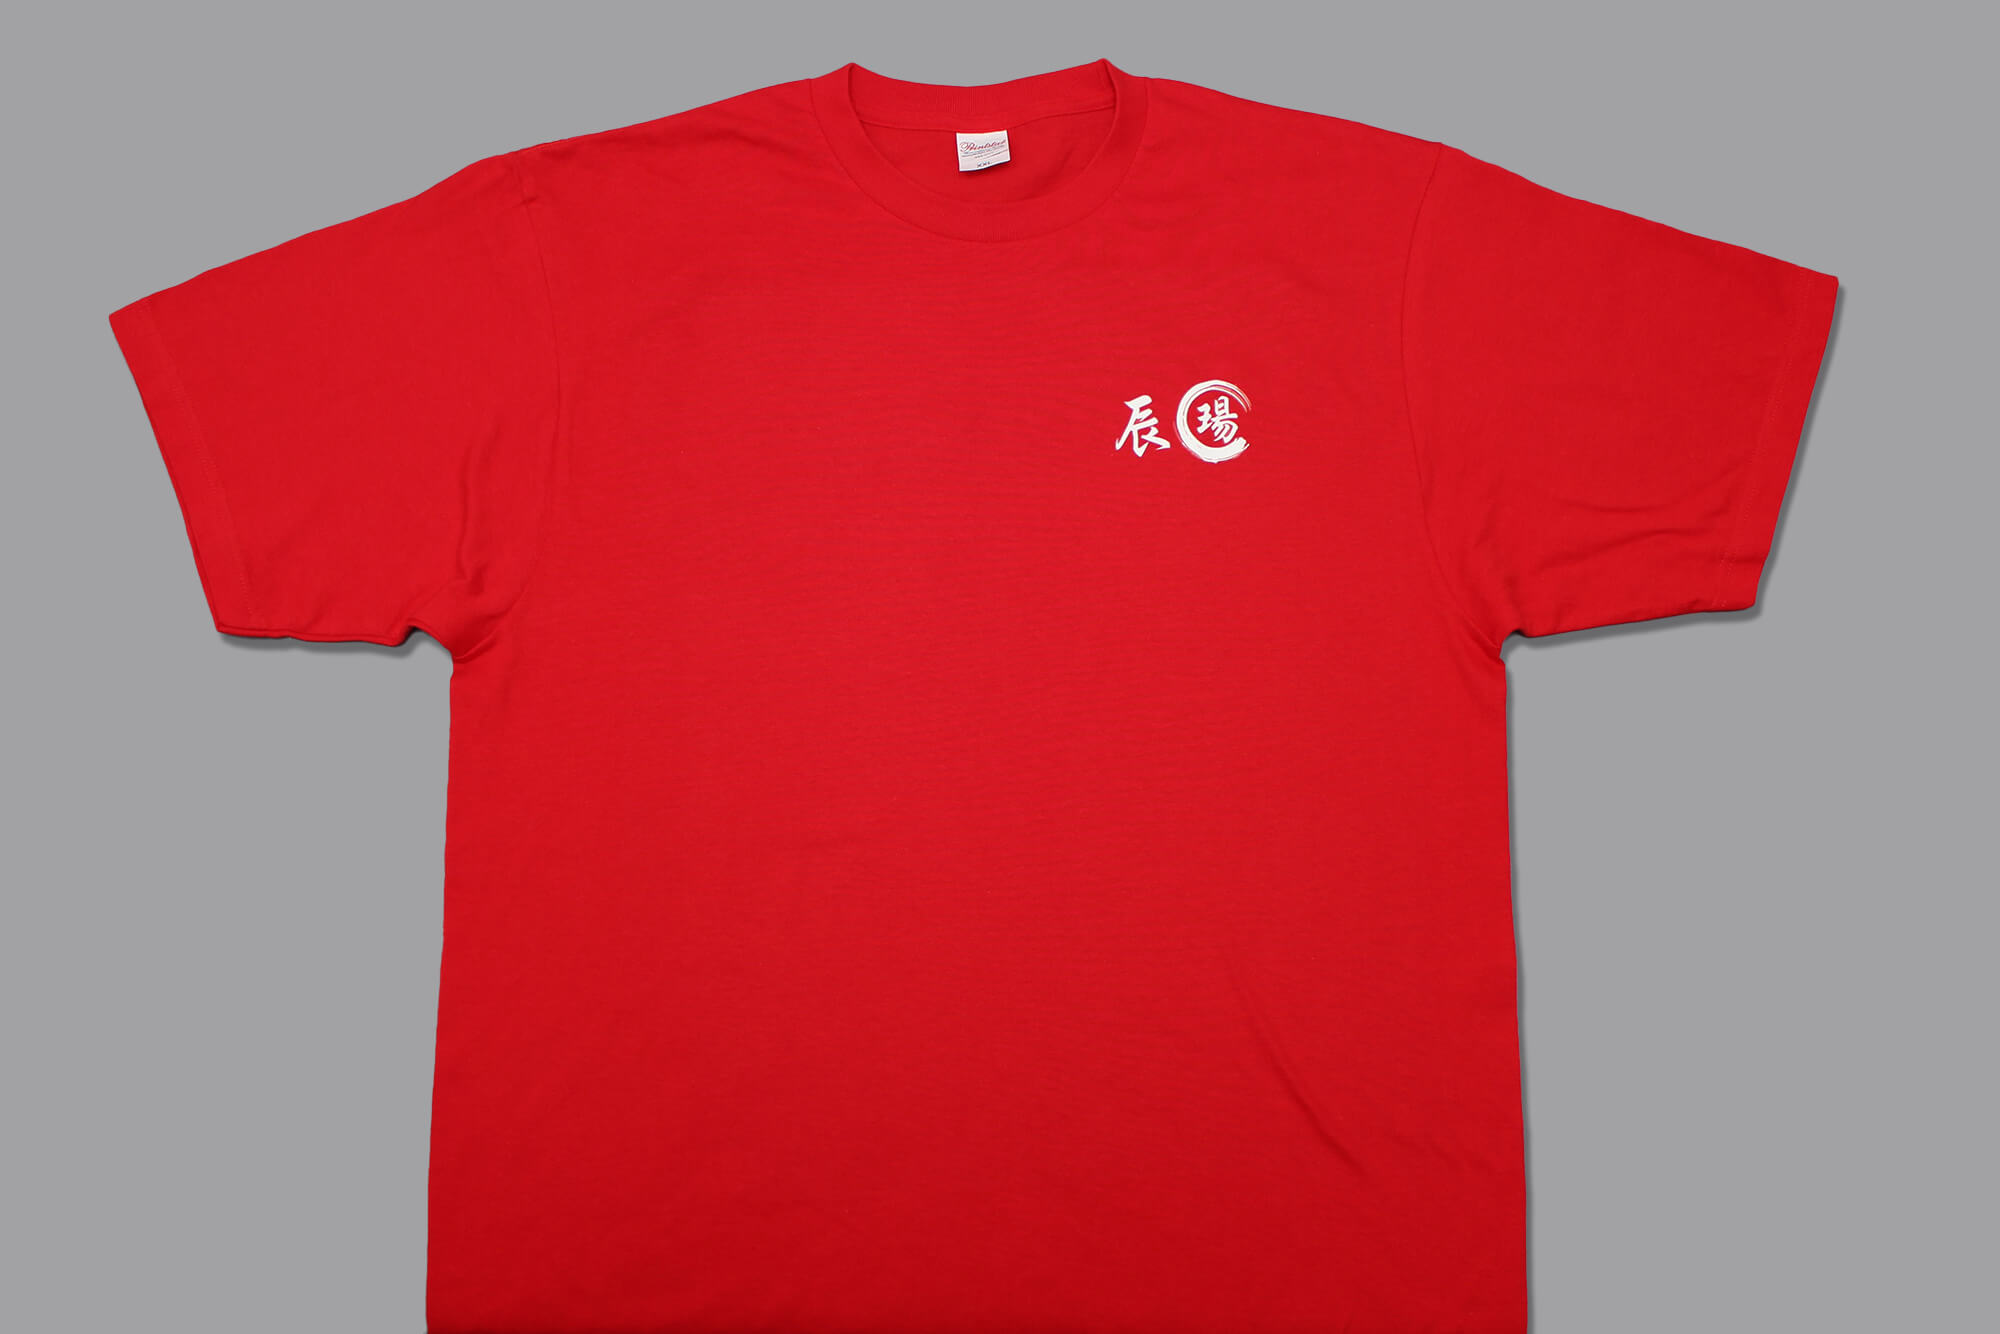 圓領棉T恤:辰瑒24H汽車道路救援的第1張圖(客製化公司制服、班服製作、團體服製作等示意或作品圖)